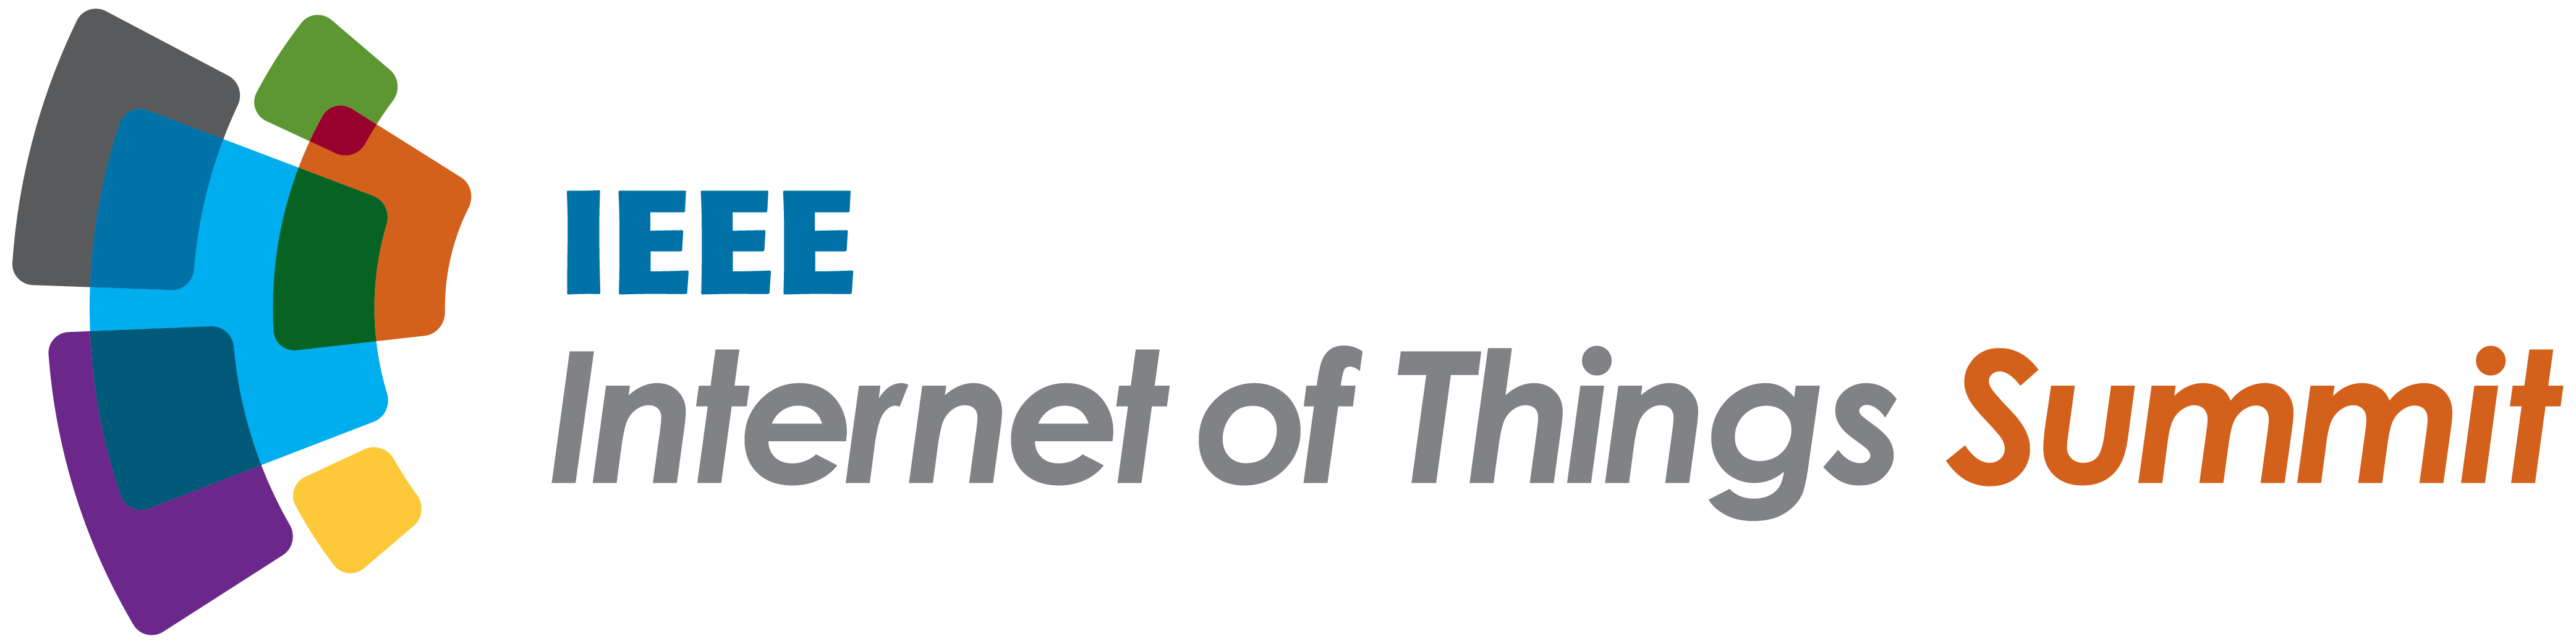 IEEE Internet of Things Summit logo